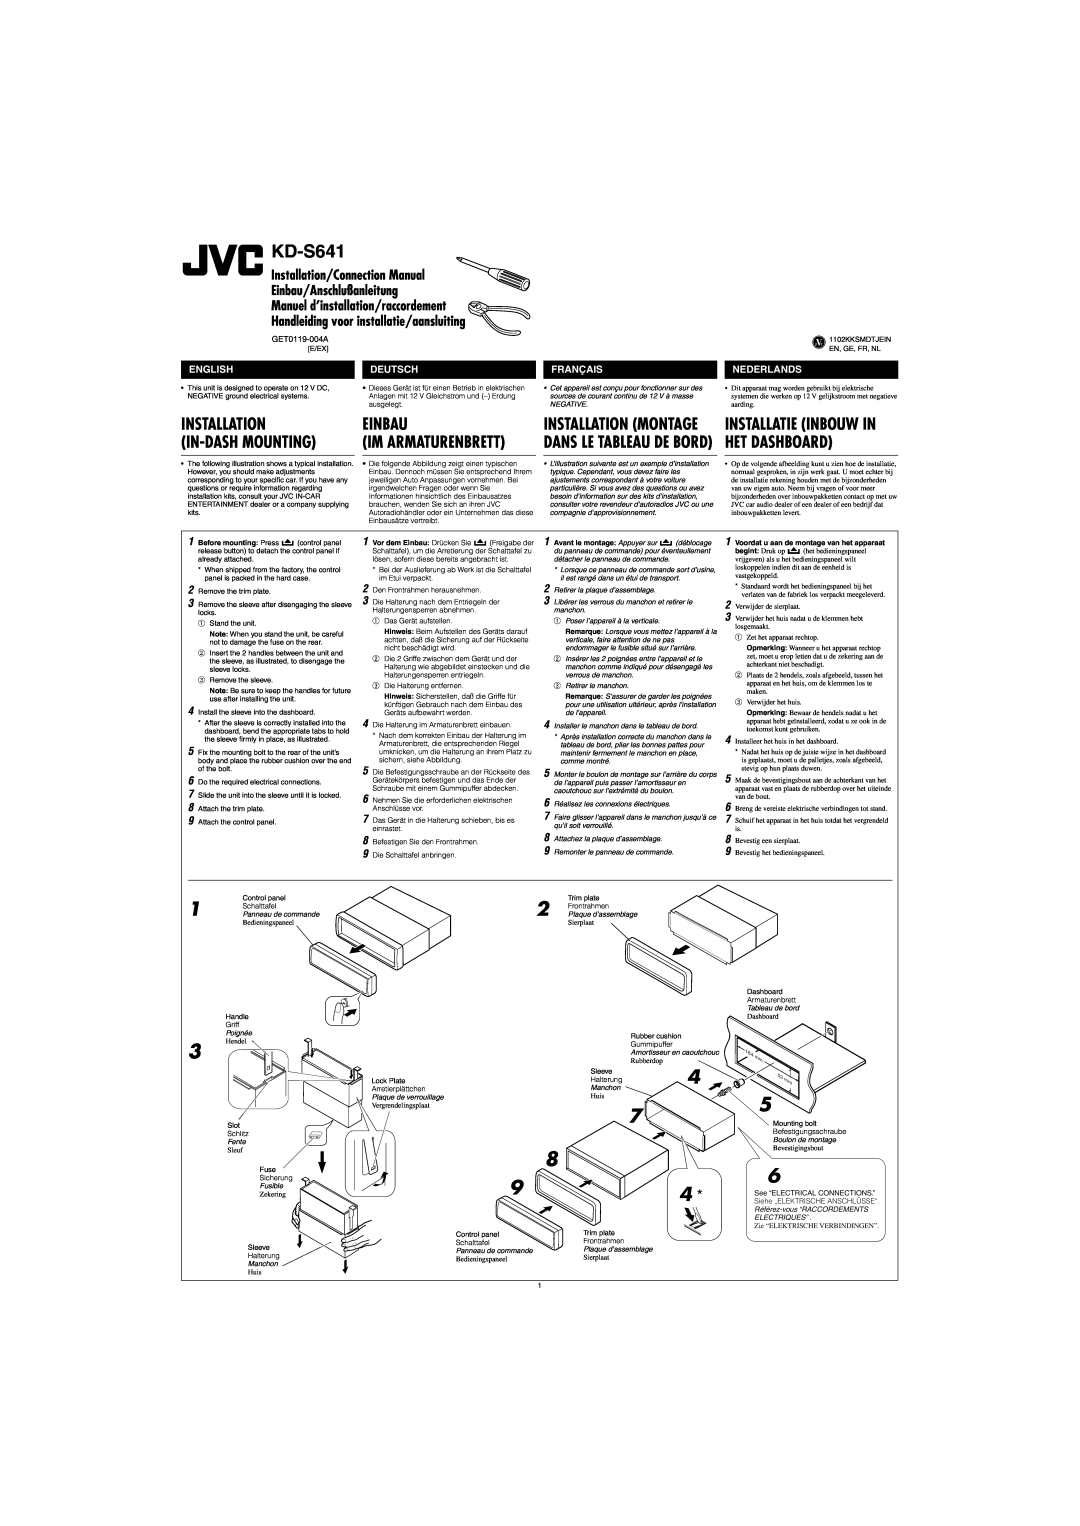 JVC KD-S641 manual Installation, Einbau, In-Dashmounting, Het Dashboard, Im Armaturenbrett, Installatie Inbouw In, English 